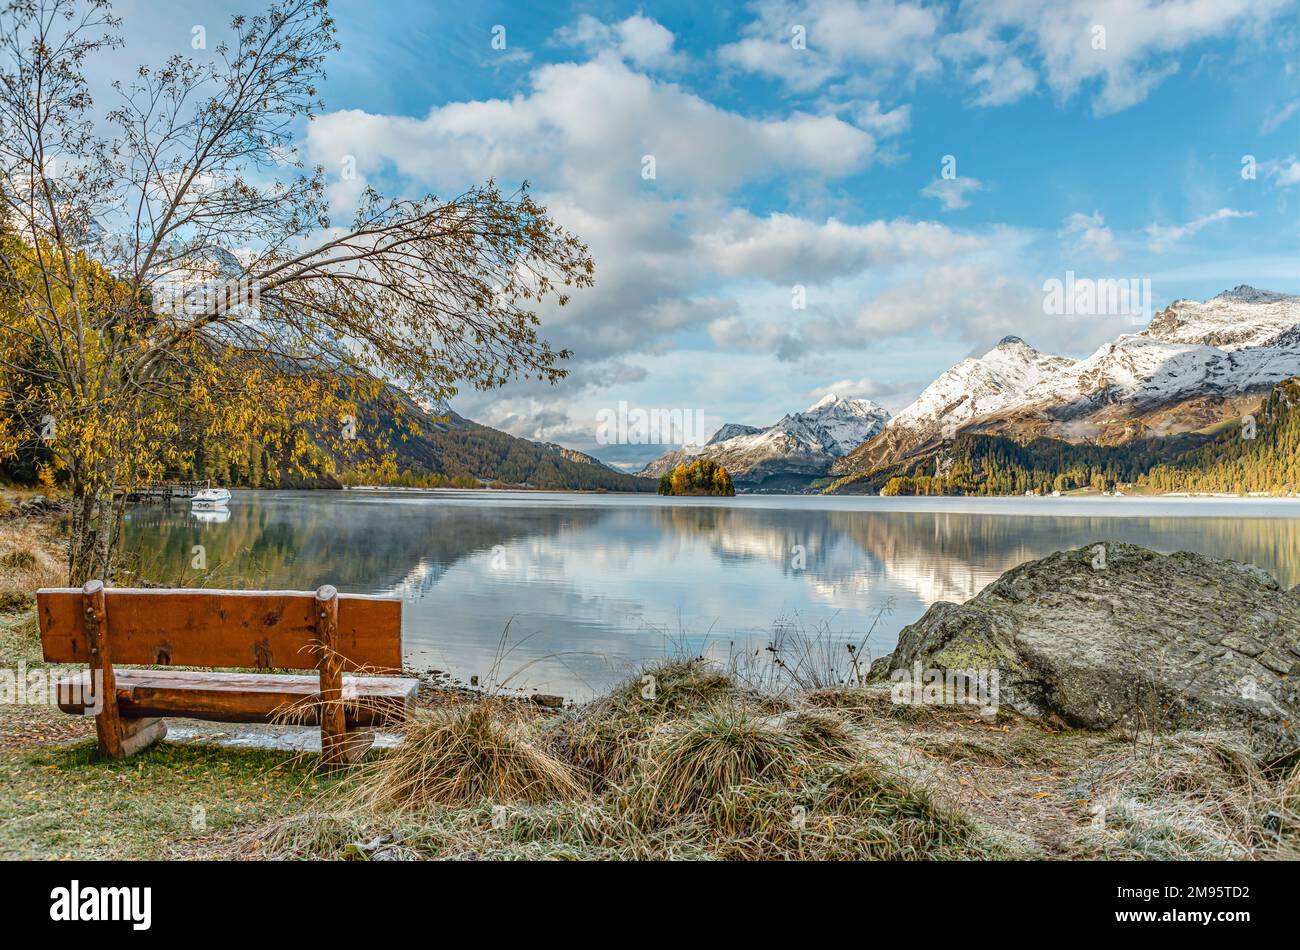 Banc solitaire et vide dans un paysage d'automne au lac Sils, Engadine, Suisse avec Piz Margna en arrière-plan Banque D'Images